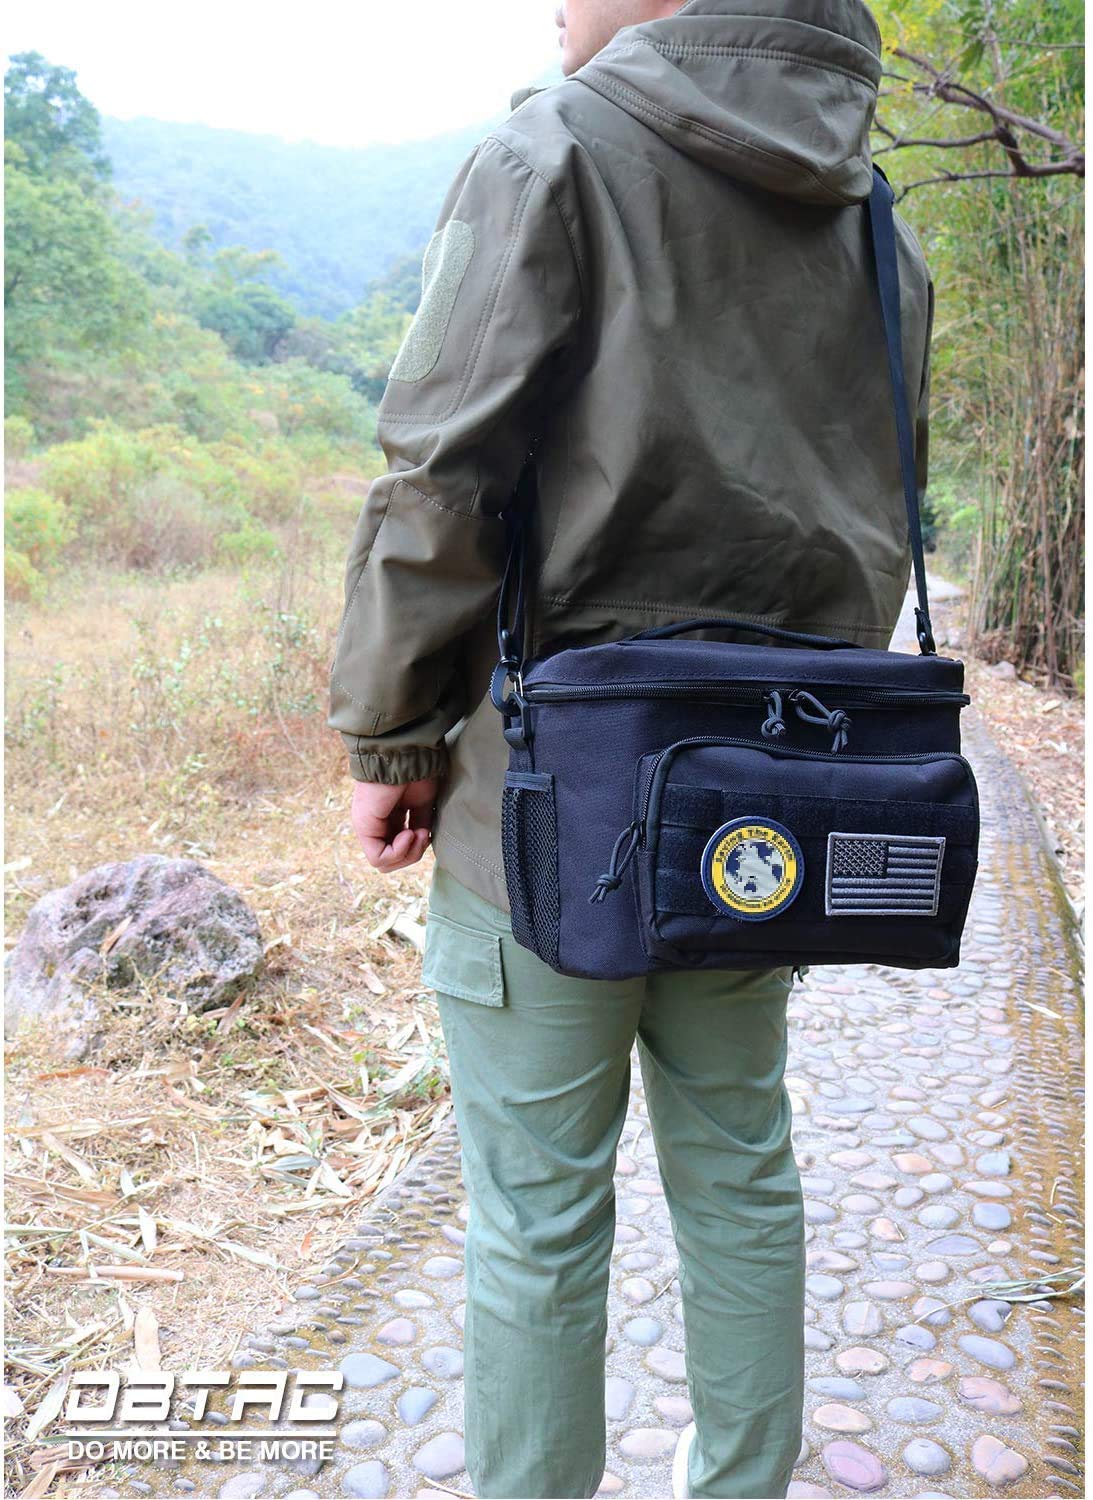 DBTAC Range Bag Soft Pistol Case XS (Urban Black) + Tactical Lunch Bag (Black), Durable Material with adjustable shoulder strap, Multi-functional Design